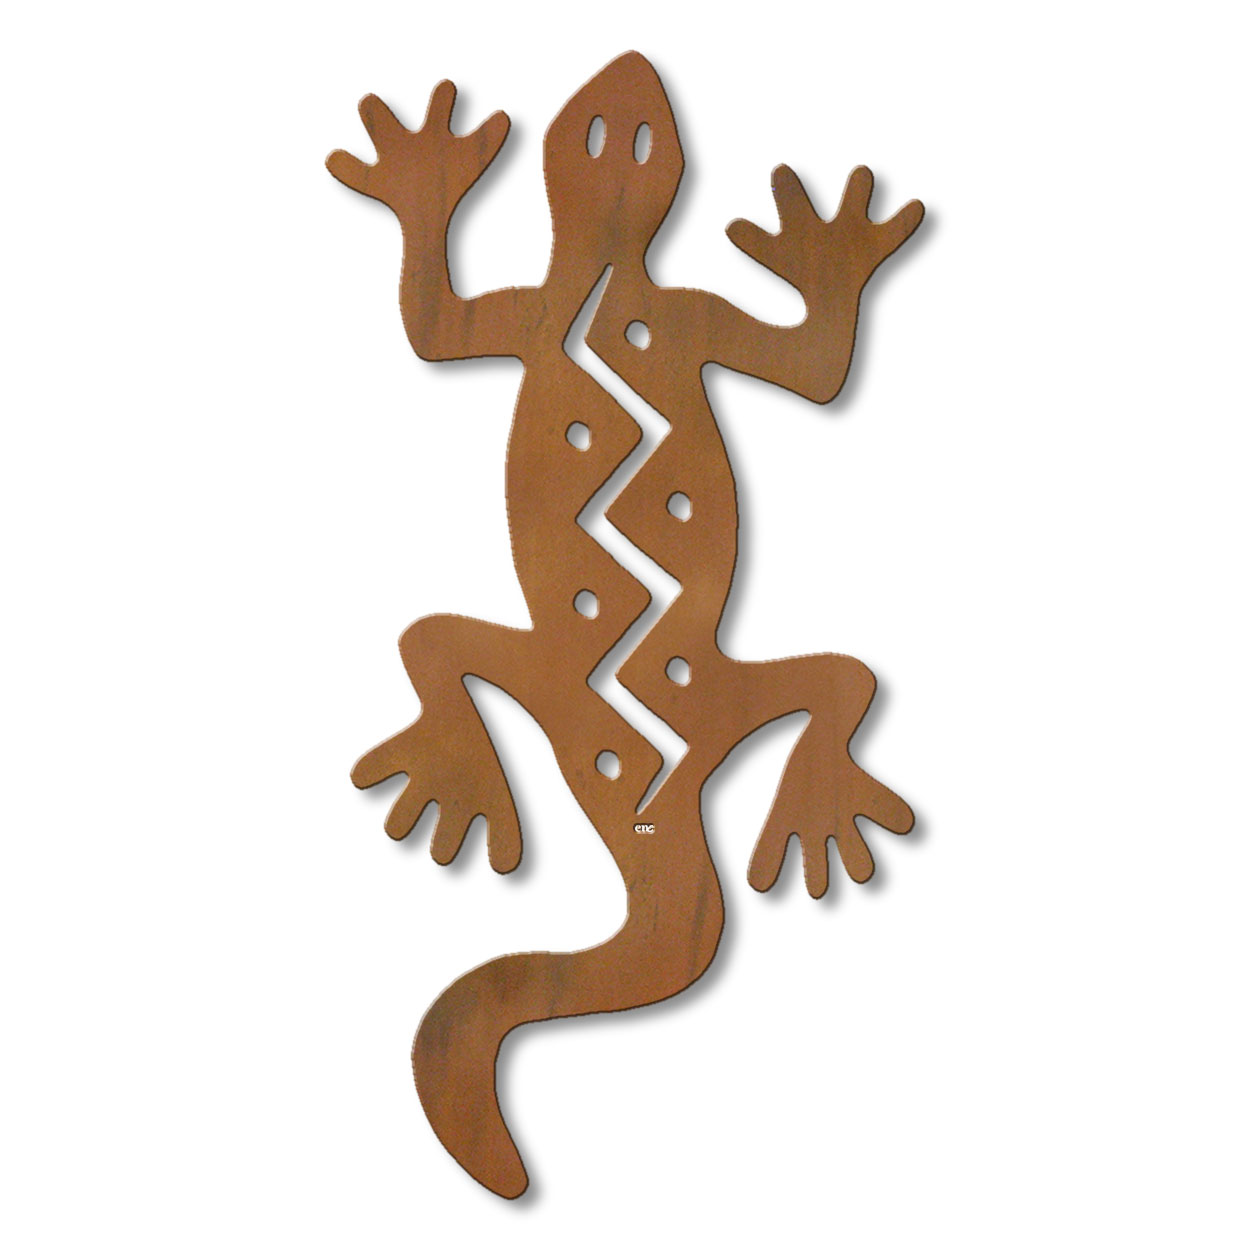 625038r - 18 or 24in Metal Wall Art - Climbing Gecko - Rust Patina